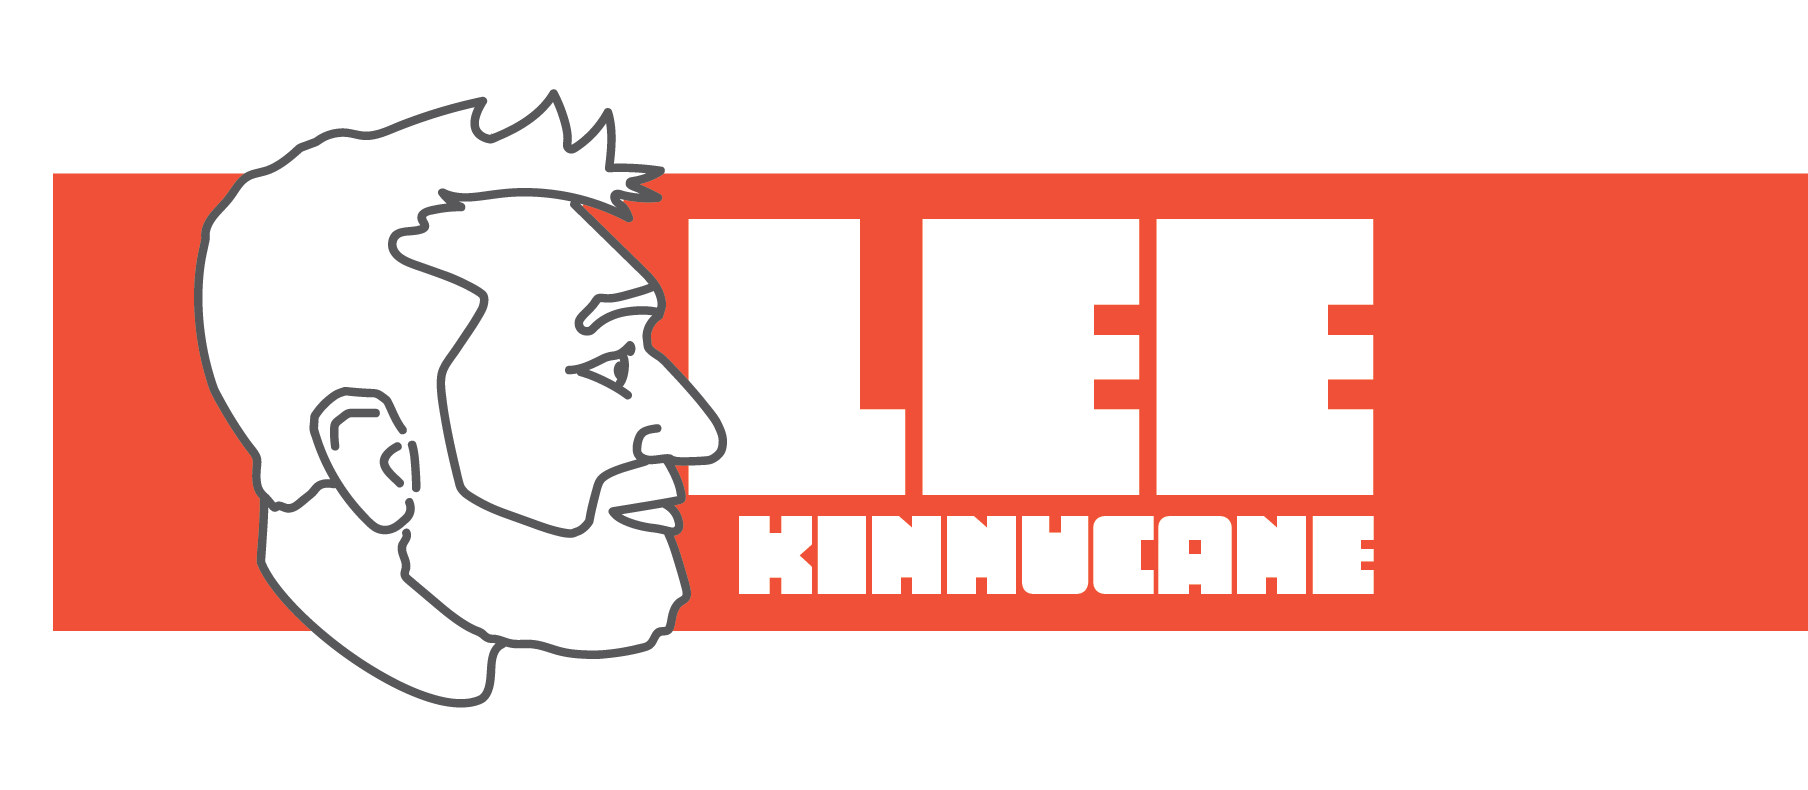 Lee Kinnucane